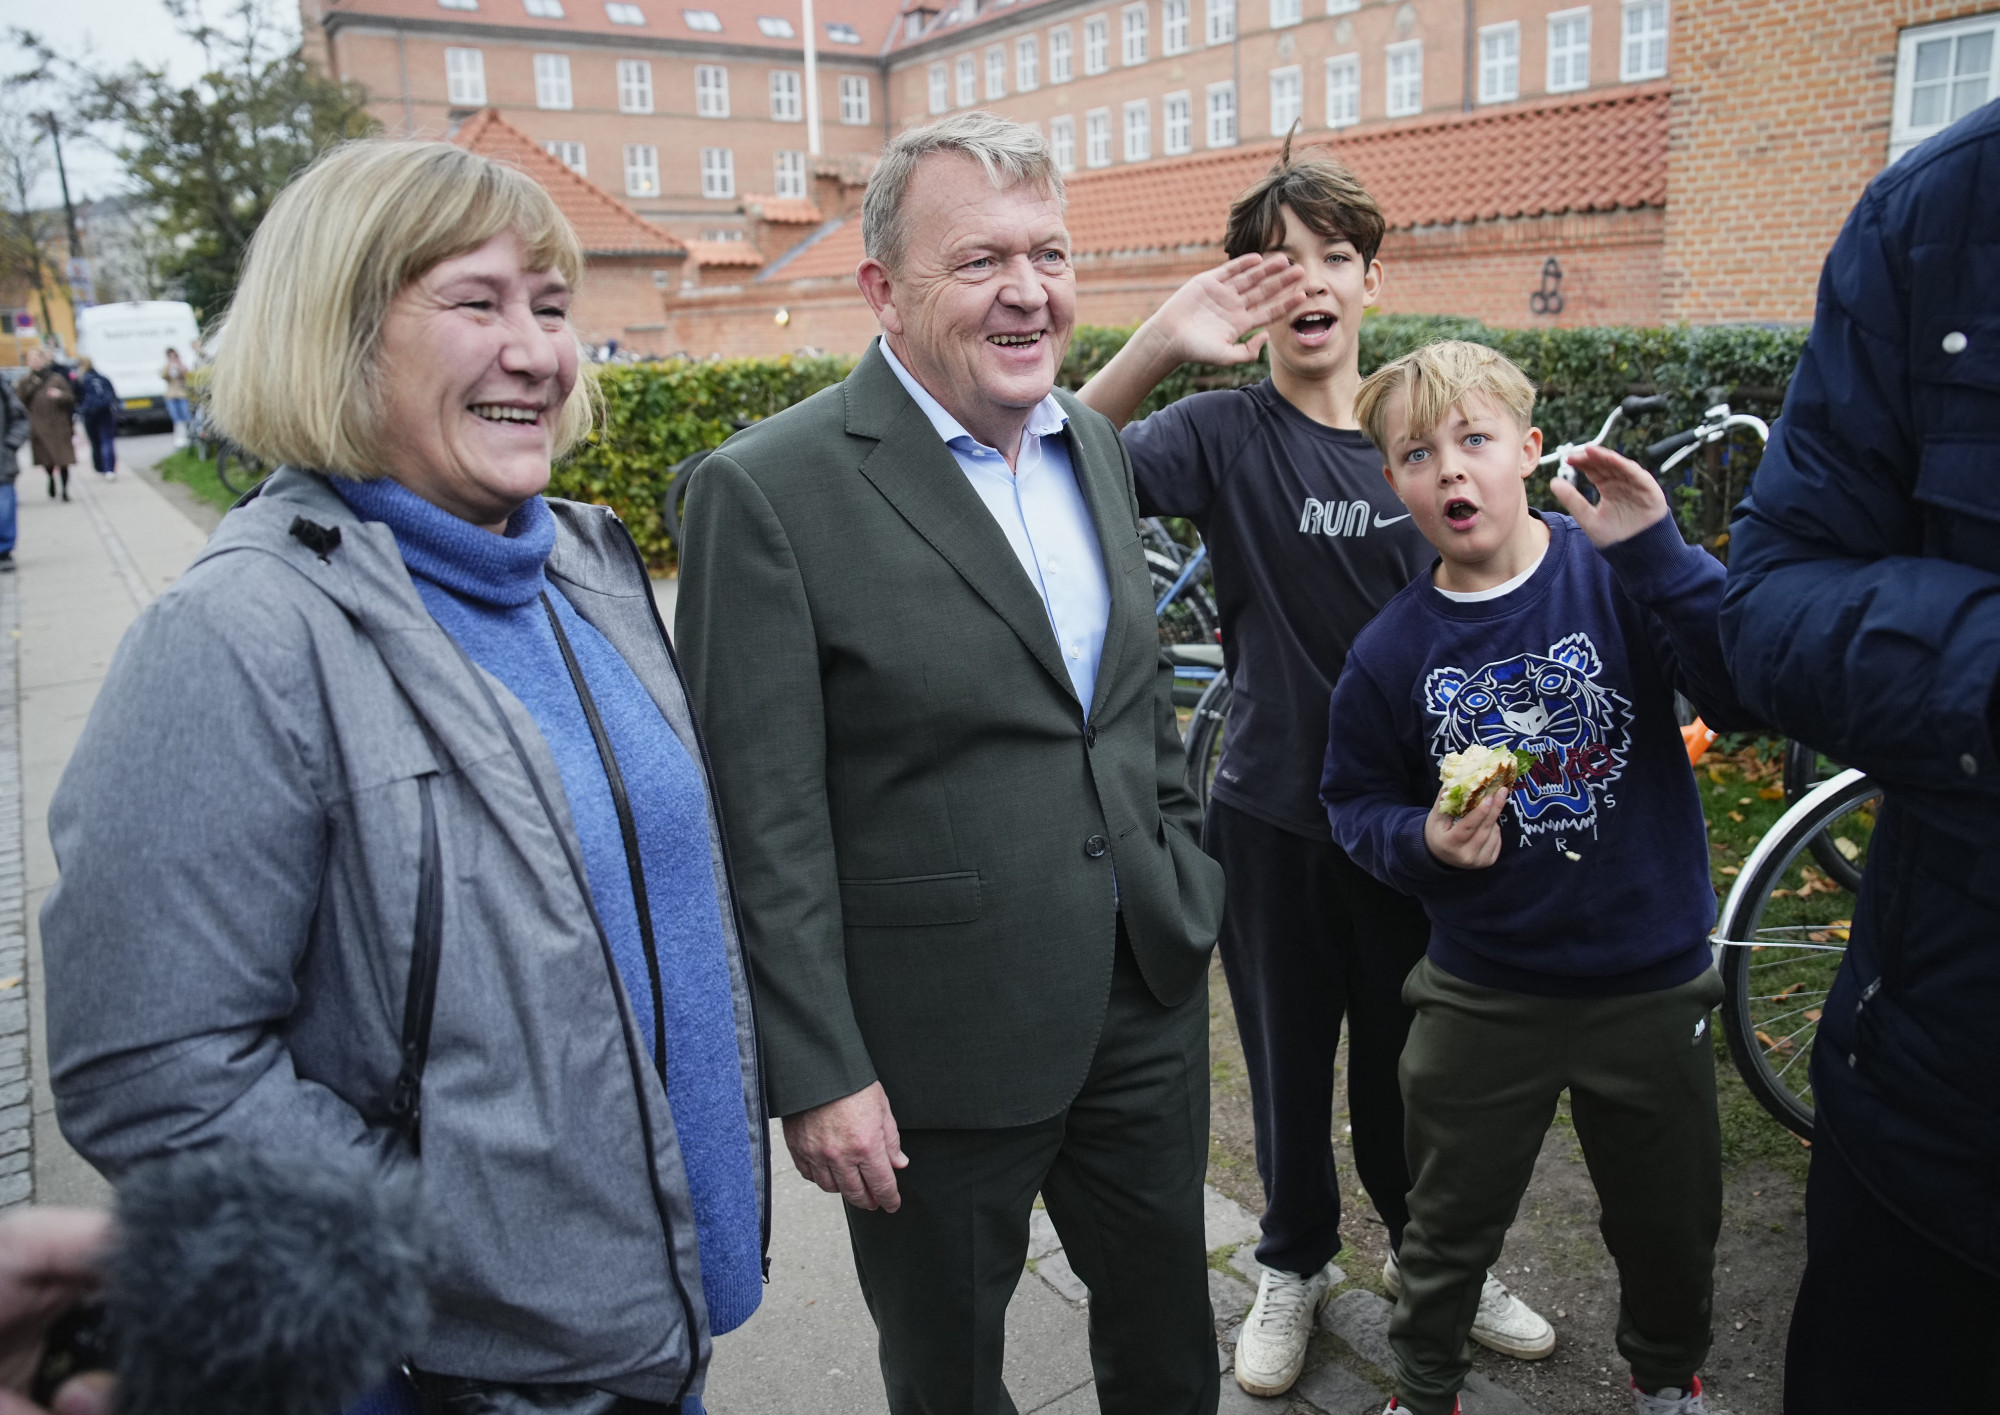 Lars Lokke Rasmussen és neje a voksolás előtti felfokozott hangulatban